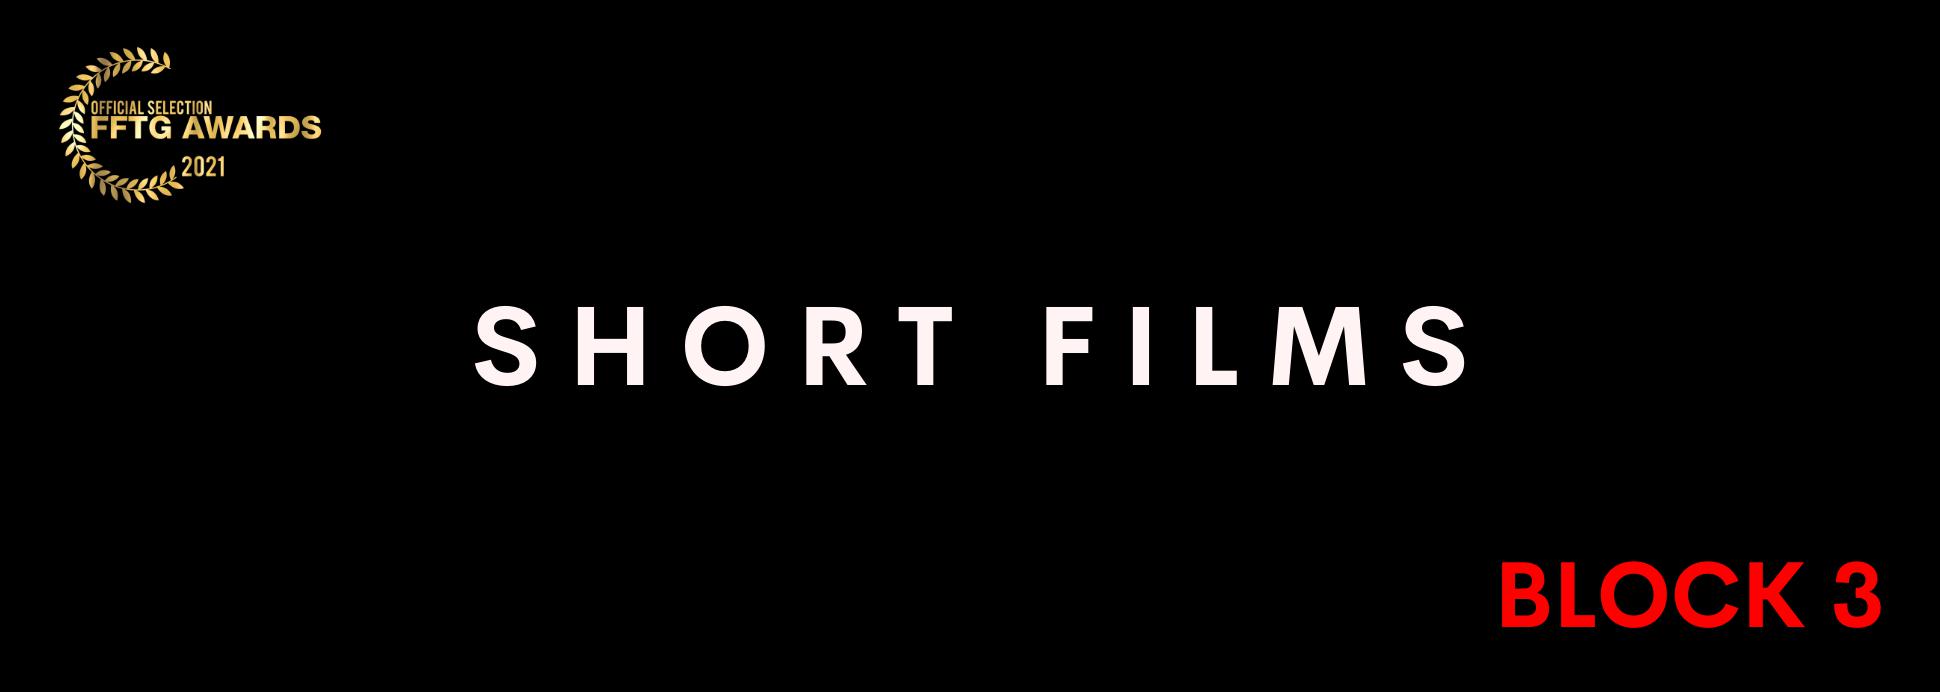 Short films BLOCK 3